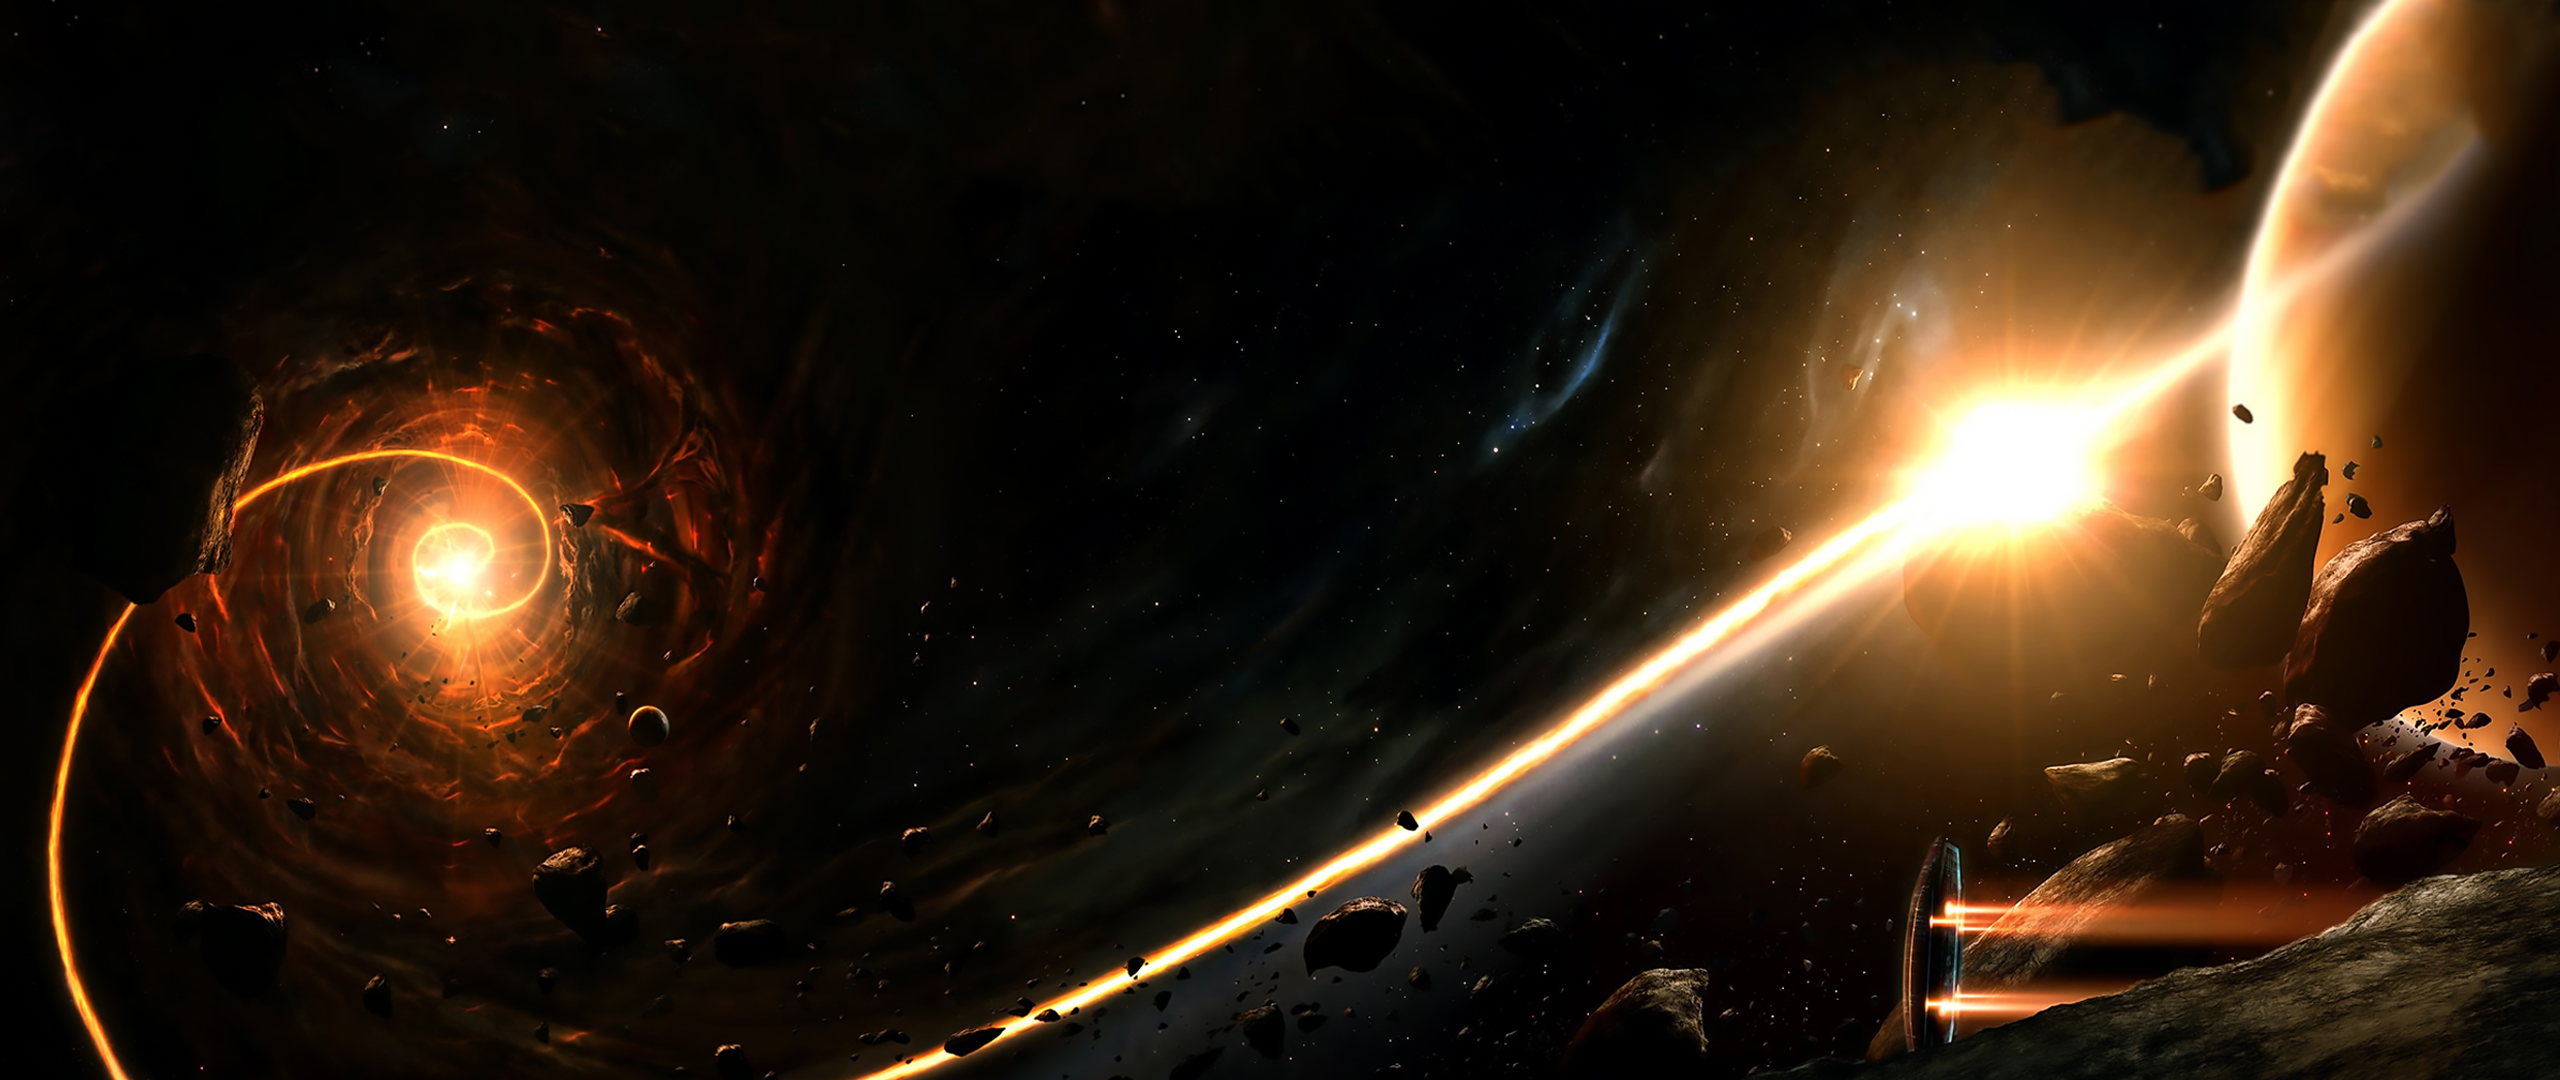 General 2560x1080 ultrawide space digital art asteroid lights planet spaceship